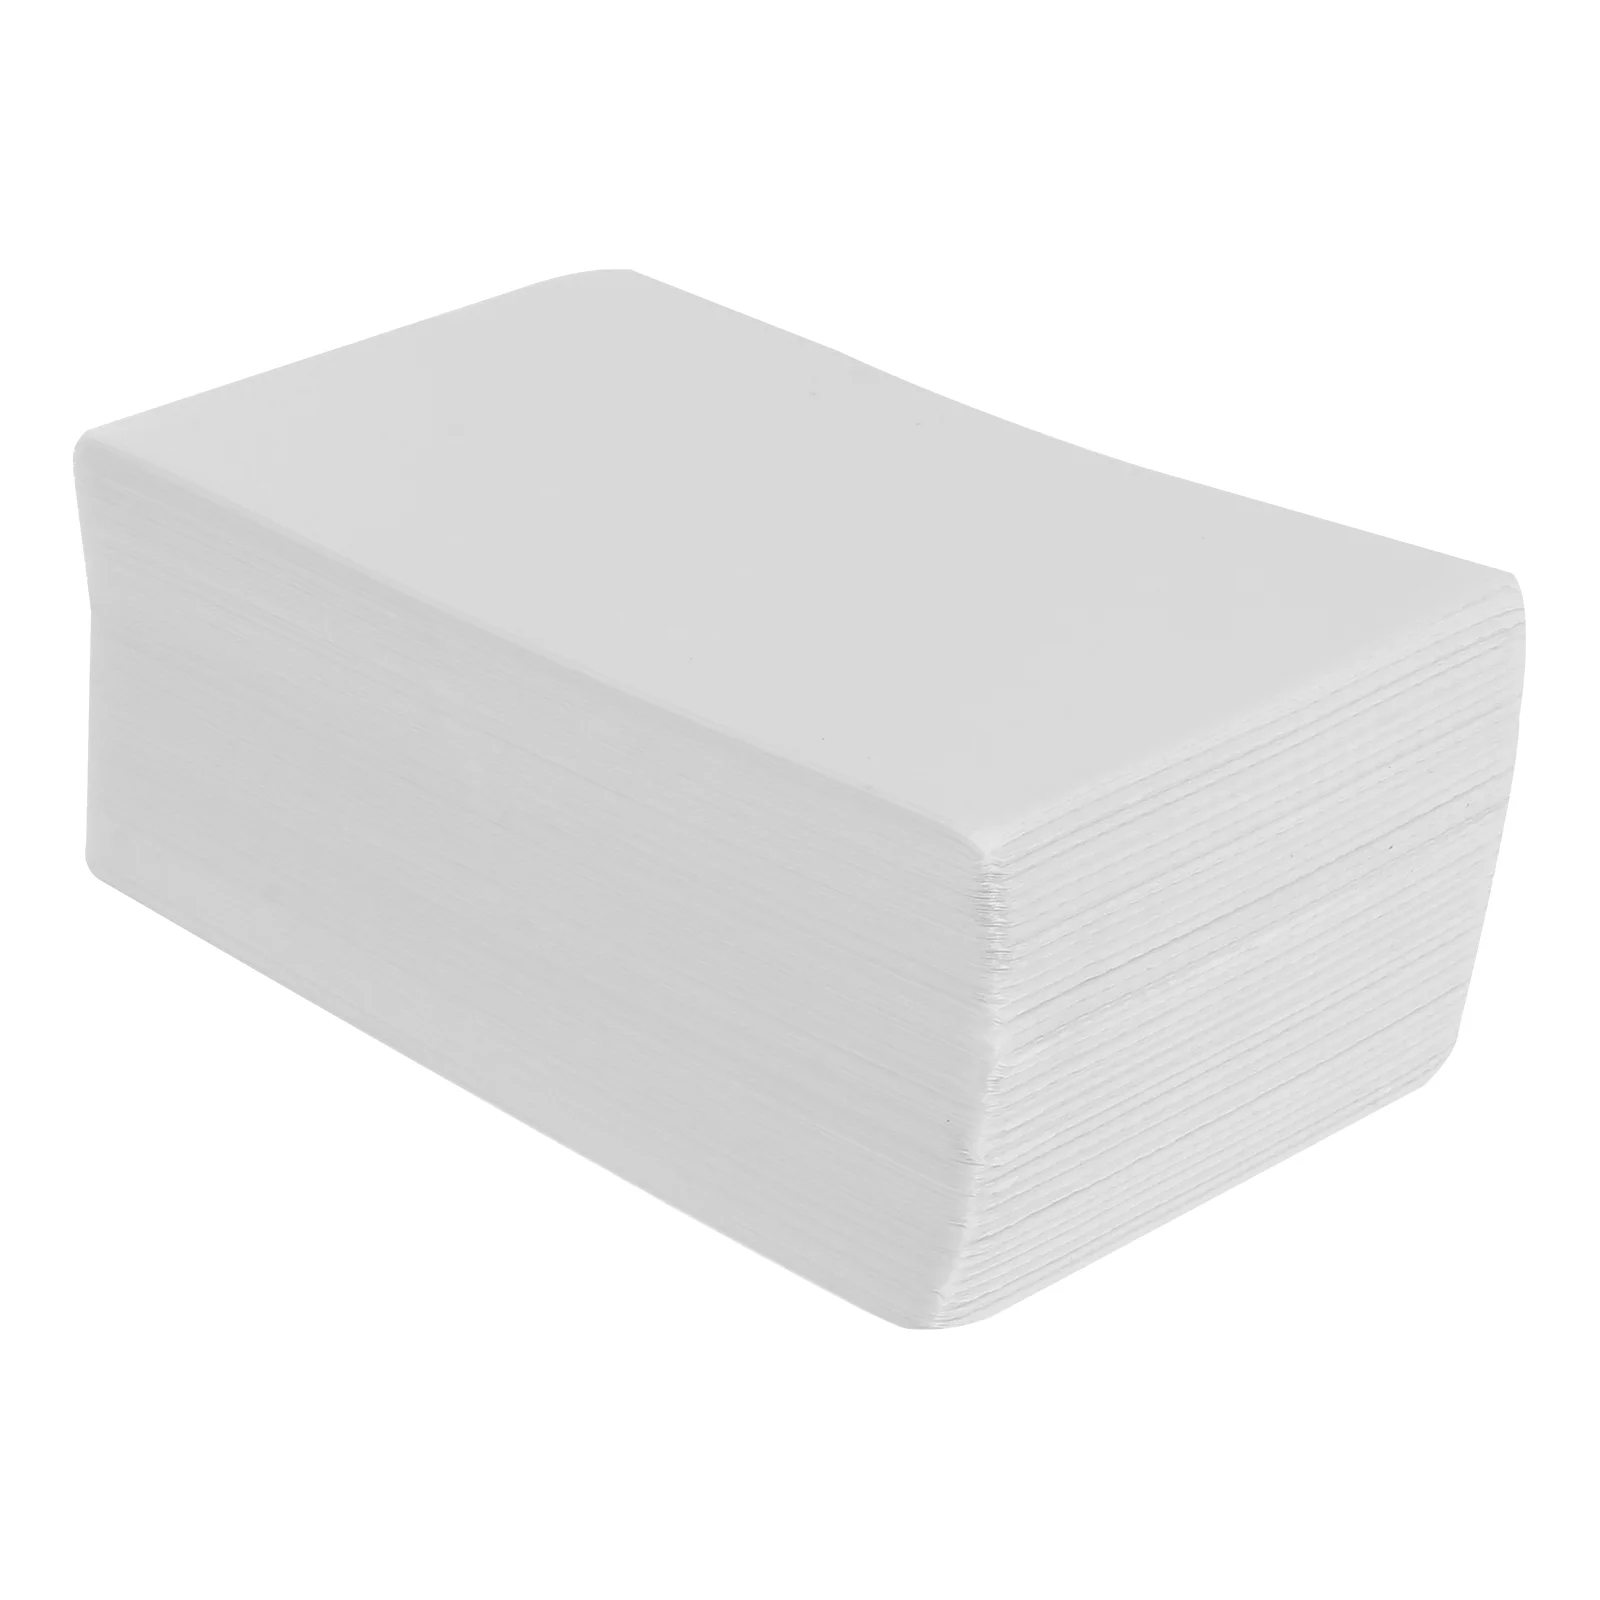 500 шт. самоклеящиеся этикетки для печати, стикеры для почтовых отправлений (белые) от AliExpress WW